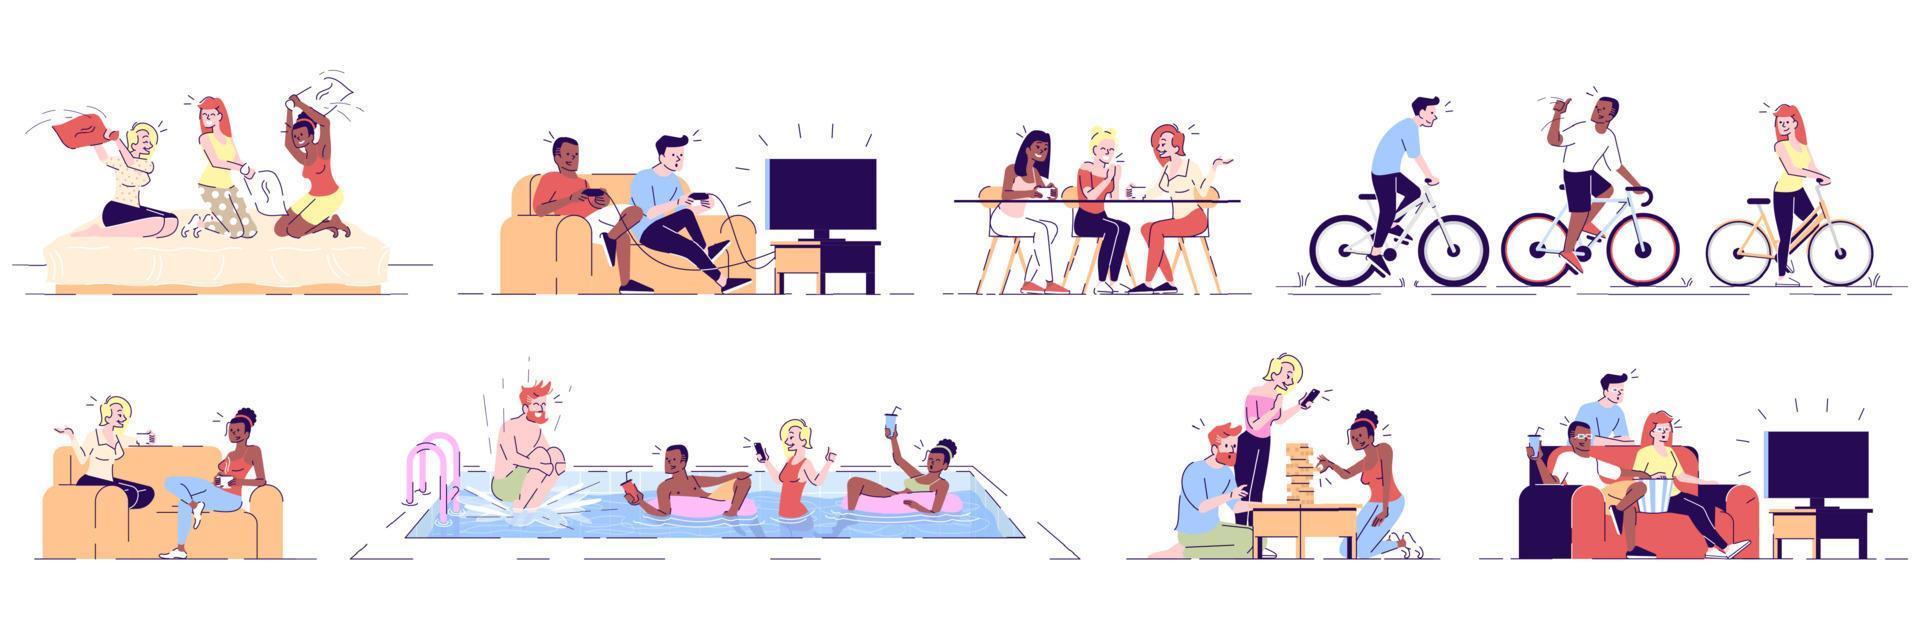 vrienden plezier platte vector illustraties set. jonge mensen ontspannen in café, zwembad, tv kijken. fietsers op fietsen geïsoleerde stripfiguren met overzichtselementen